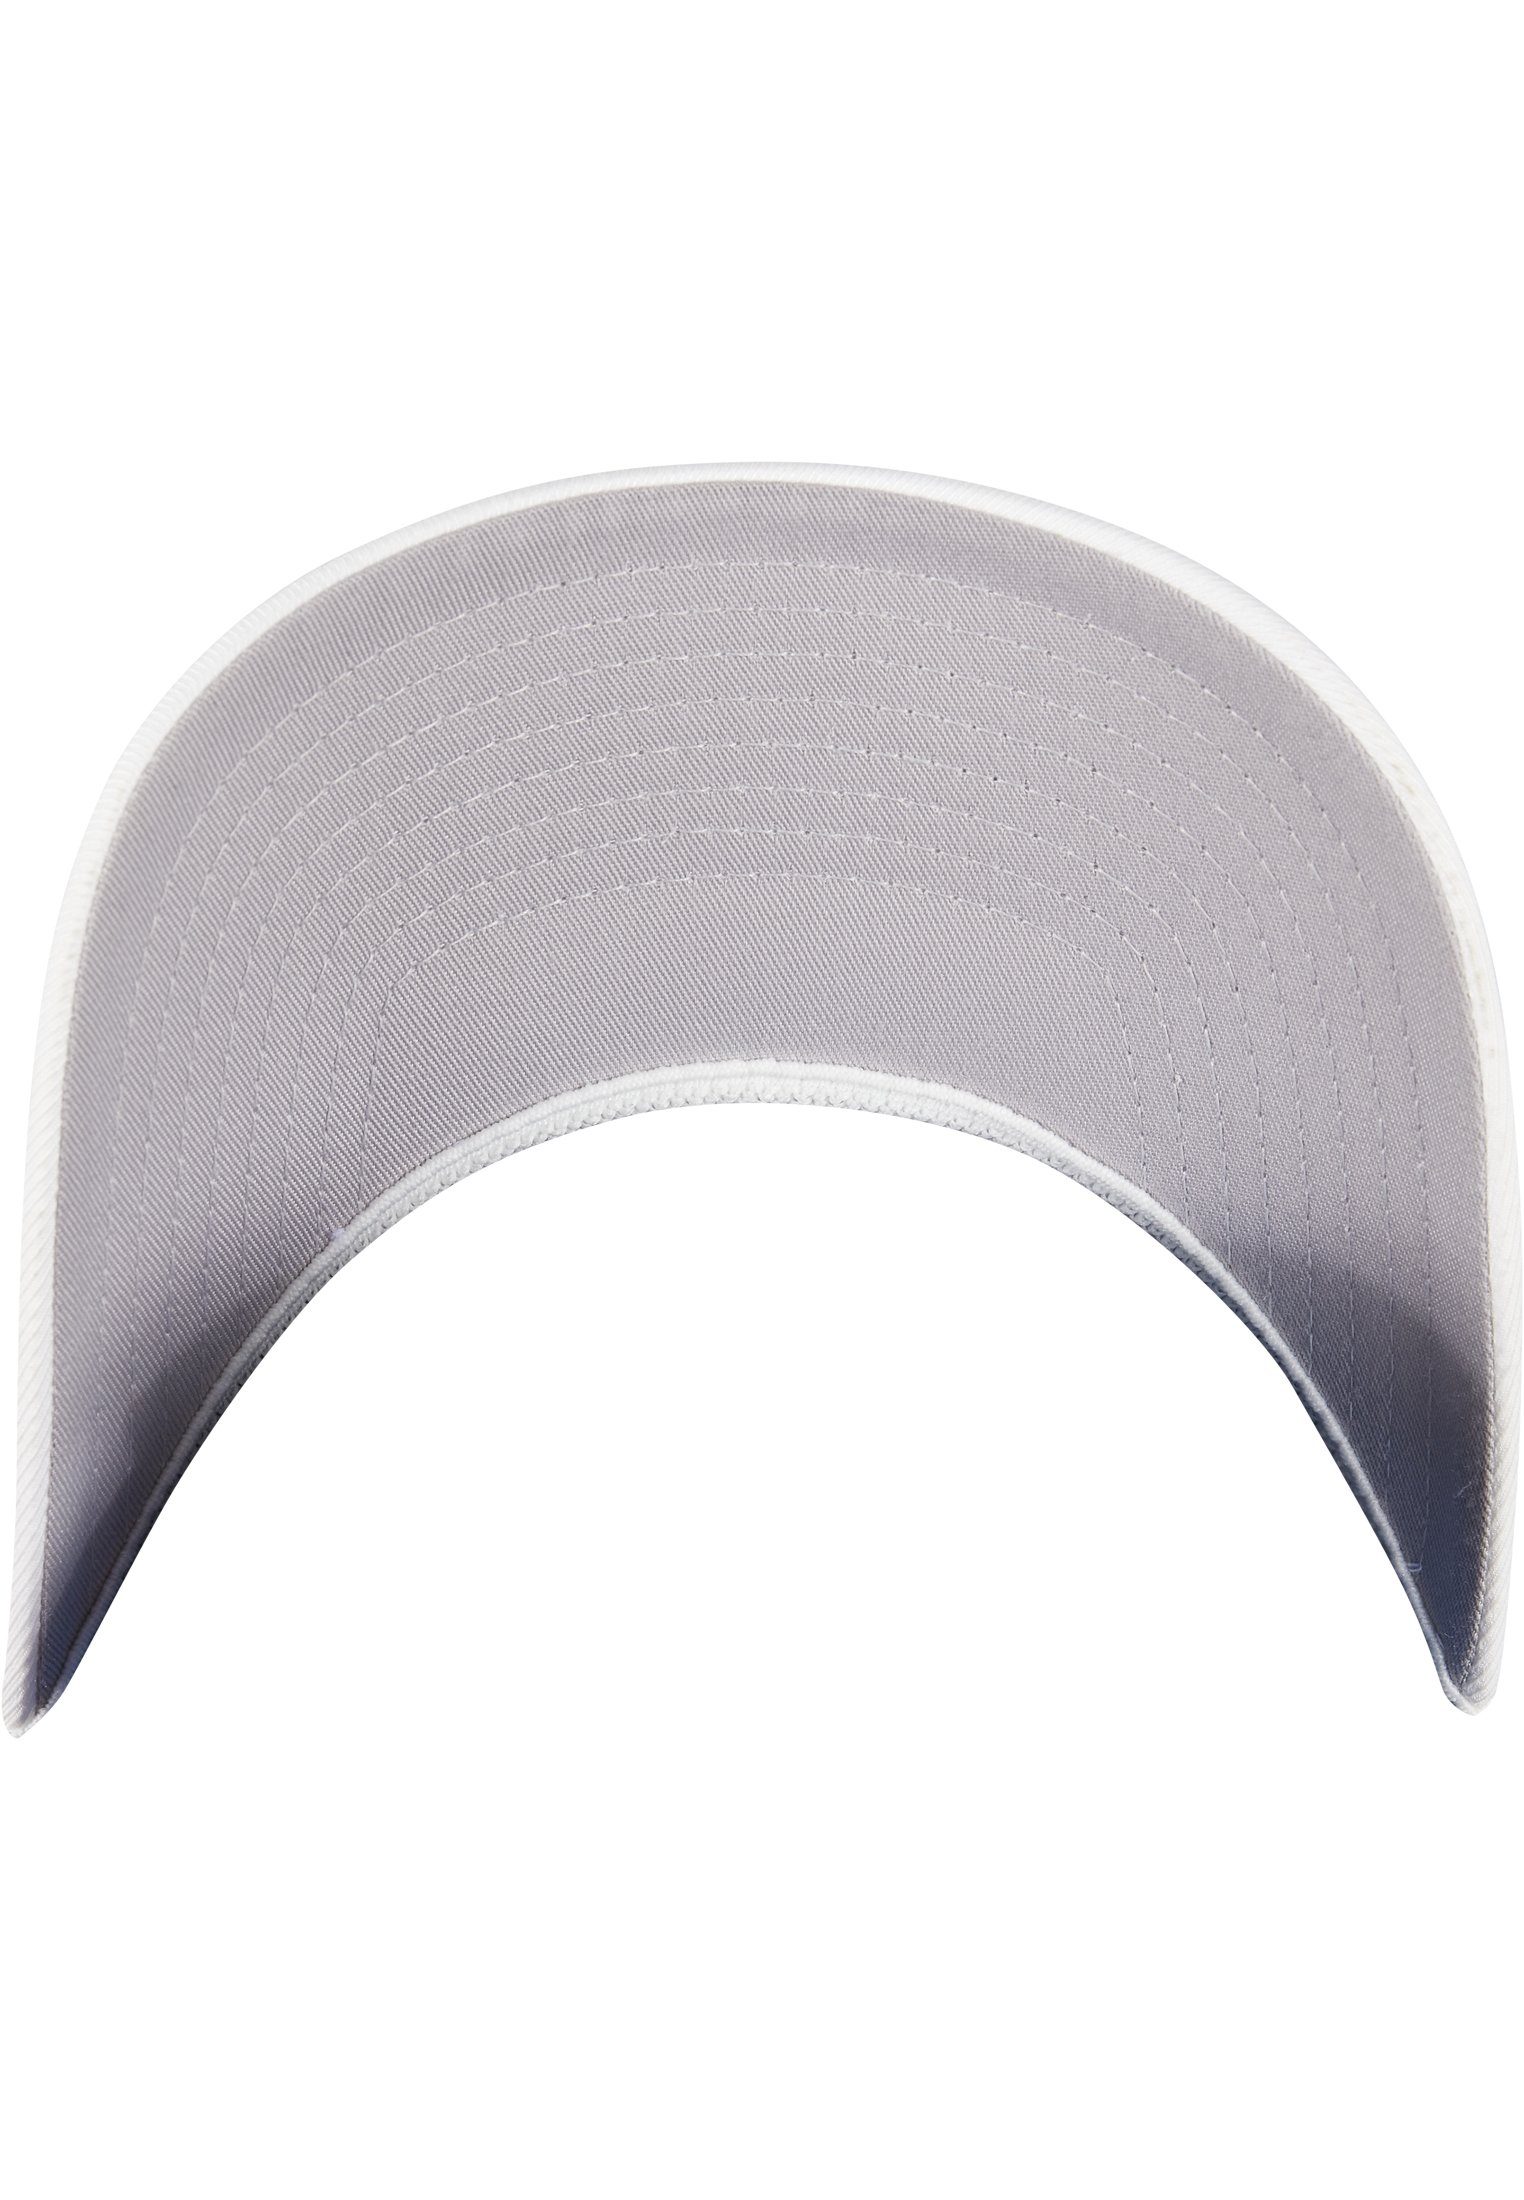 white FLEXFIT Flexfit Cap OMNIMESH Accessoires 360 CAP Flex